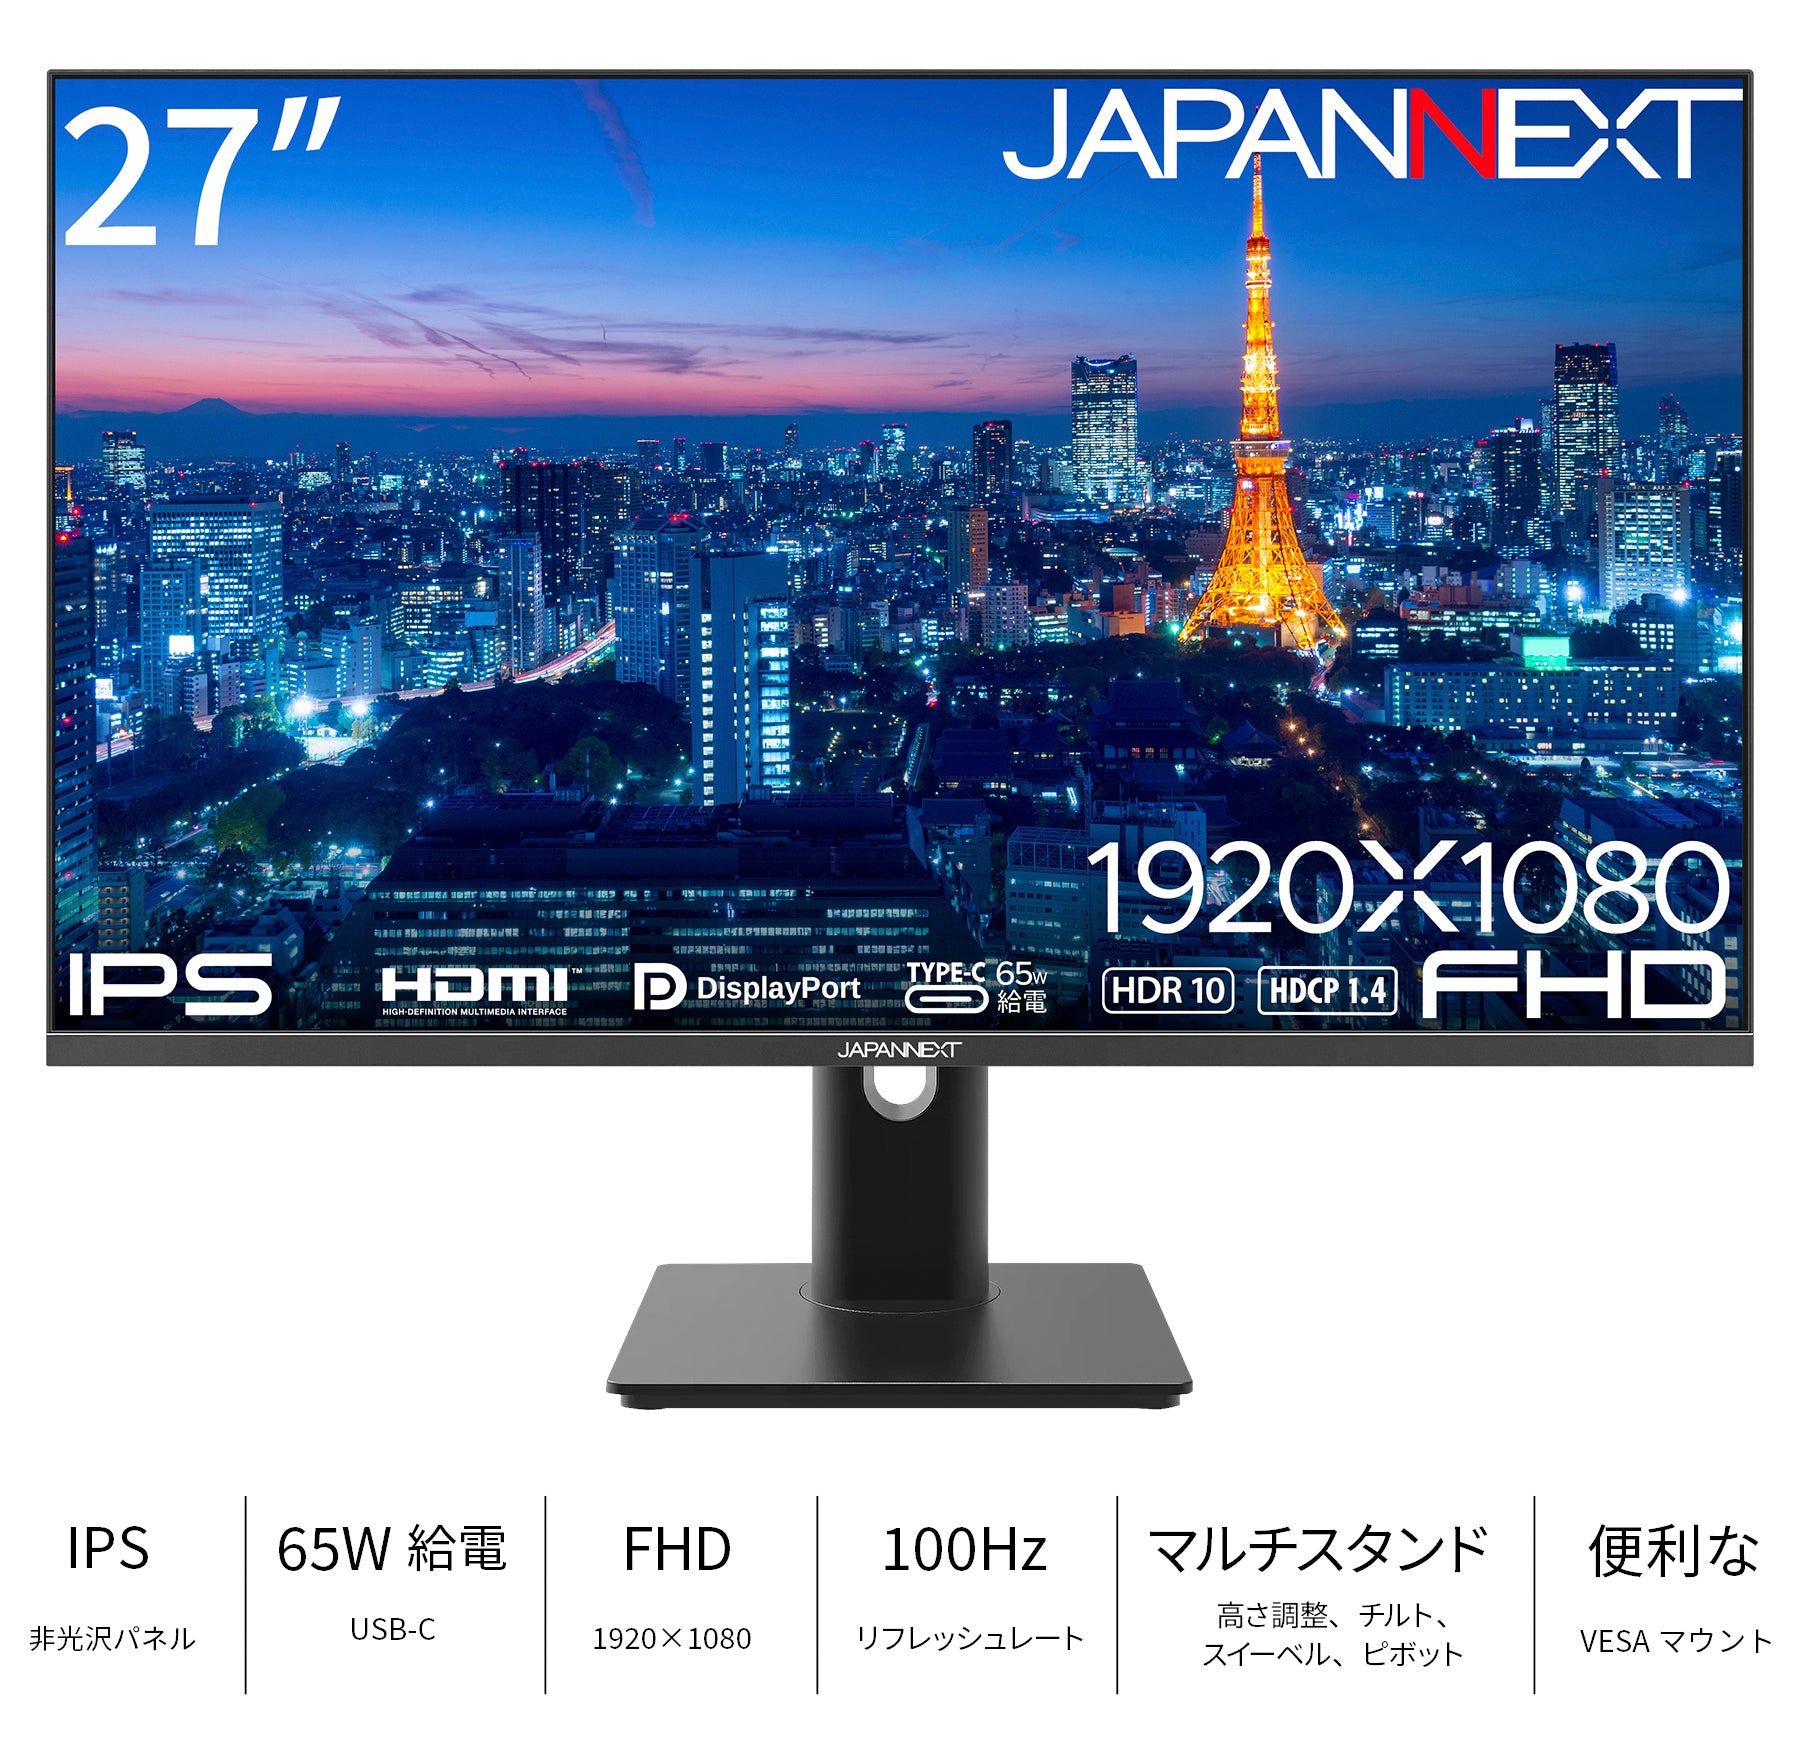 JAPANNEXT 27インチ IPSパネル搭載 フルHD(1920x1080)解像度 液晶 